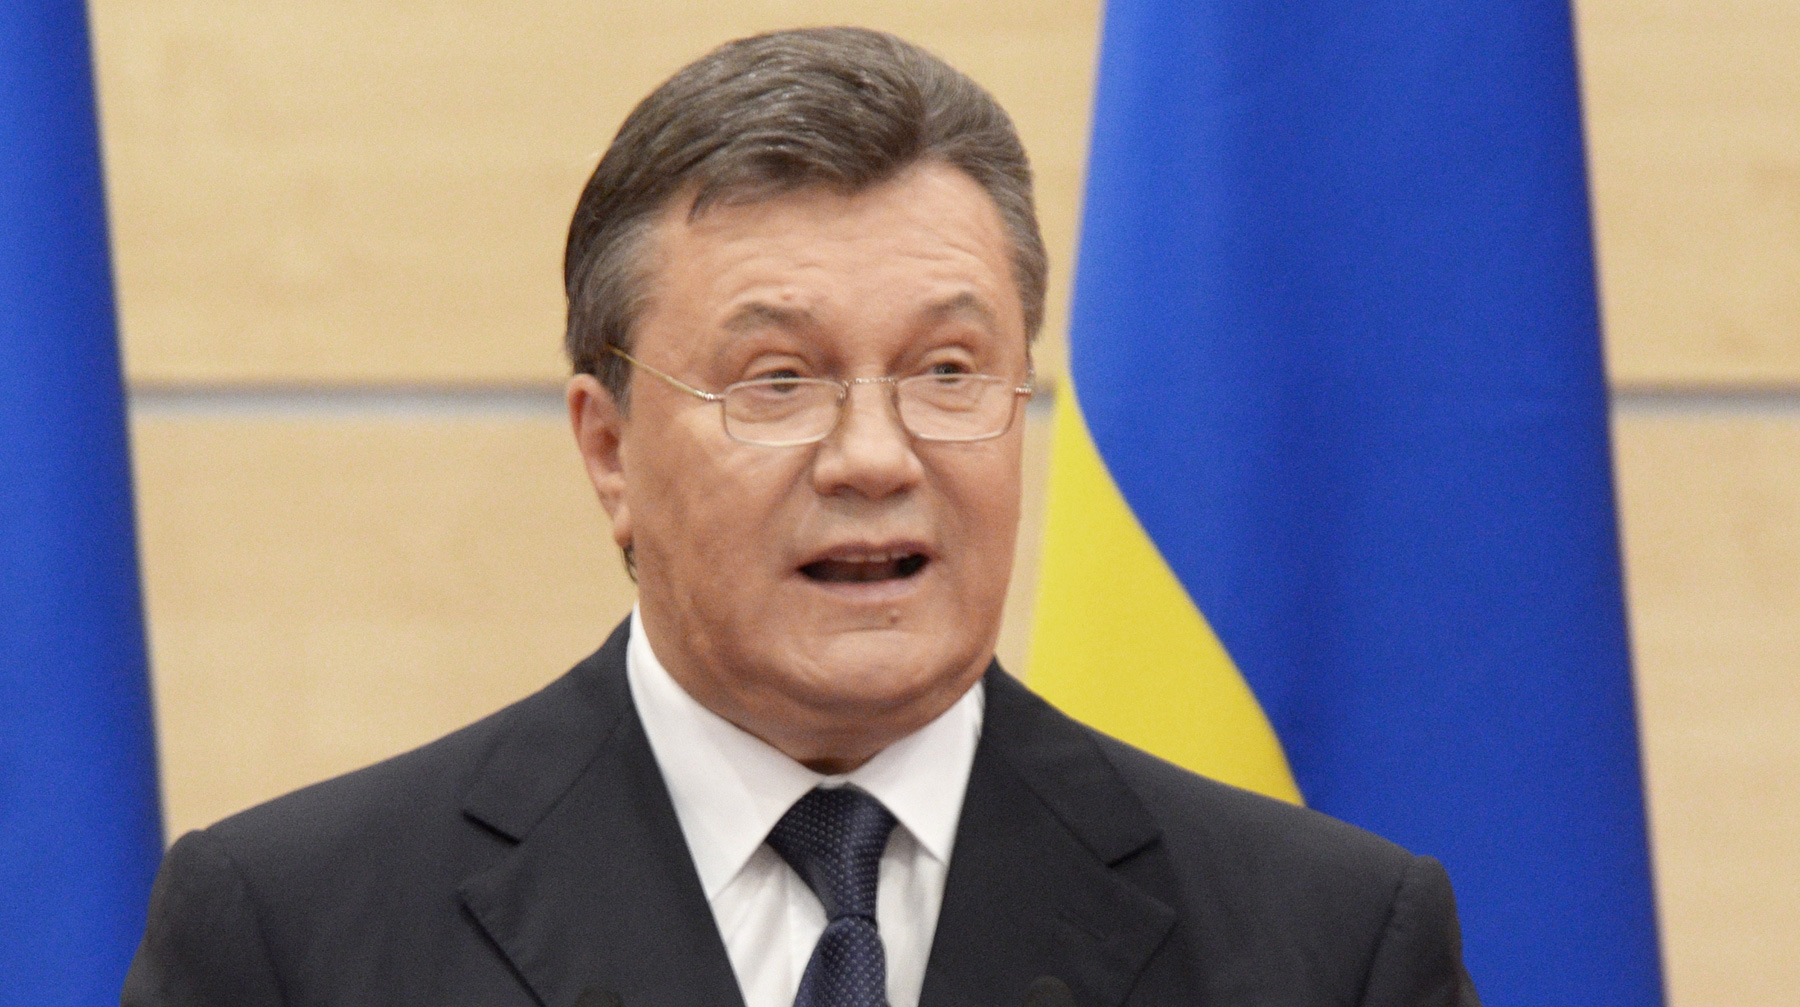 Судьи решили, что экс-президент Украины совершил преступления чтобы получить преференции от российских властей Виктор Янукович